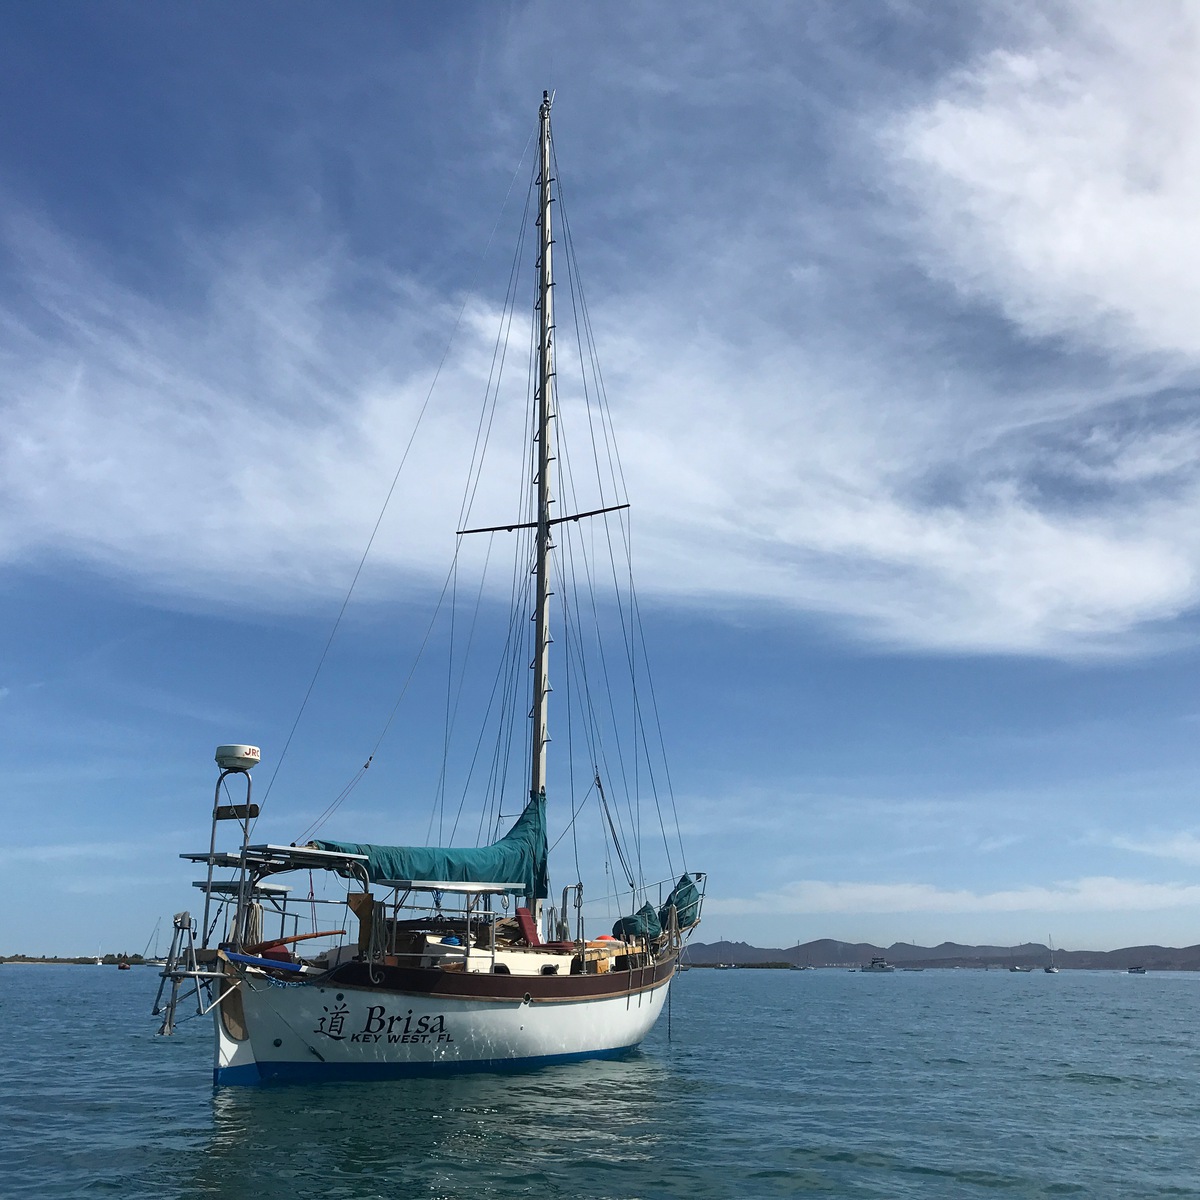 Brisa at anchor, free at last to navigate